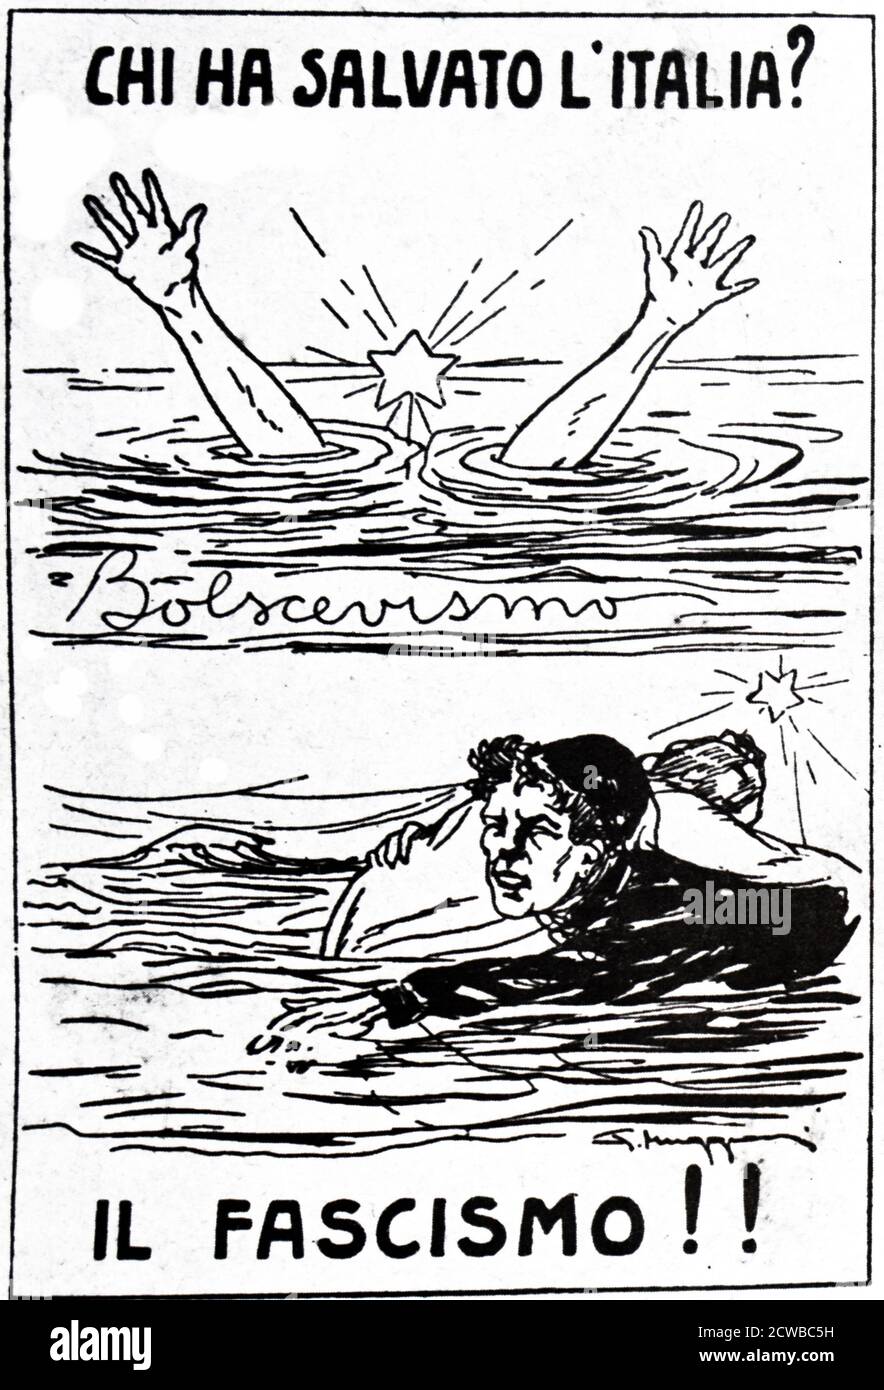 Caricature montrant le fascisme comme le sauveur de l'Italie de la menace du bolchevisme. 'chi ha salvato d'Italia?' (Qui a sauvé l'Italie?). Vers 1935 Banque D'Images